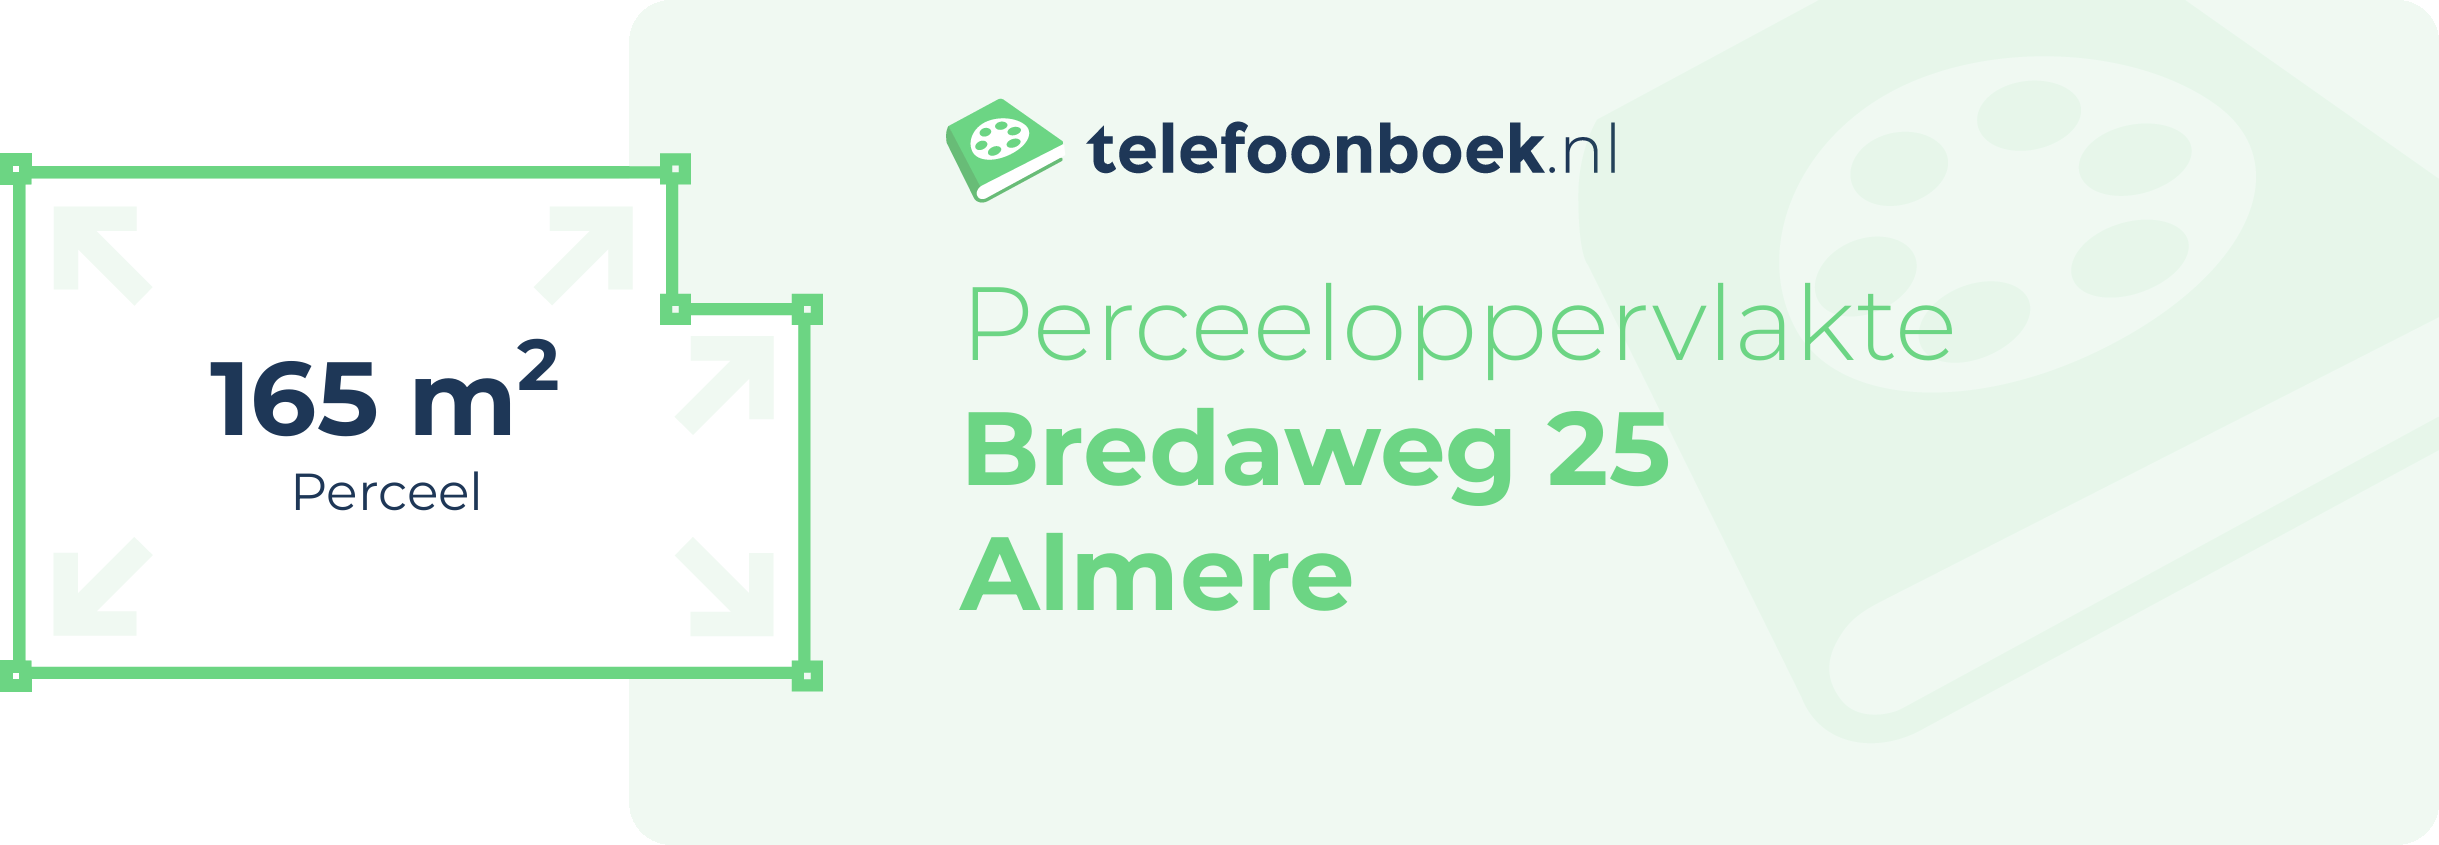 Perceeloppervlakte Bredaweg 25 Almere